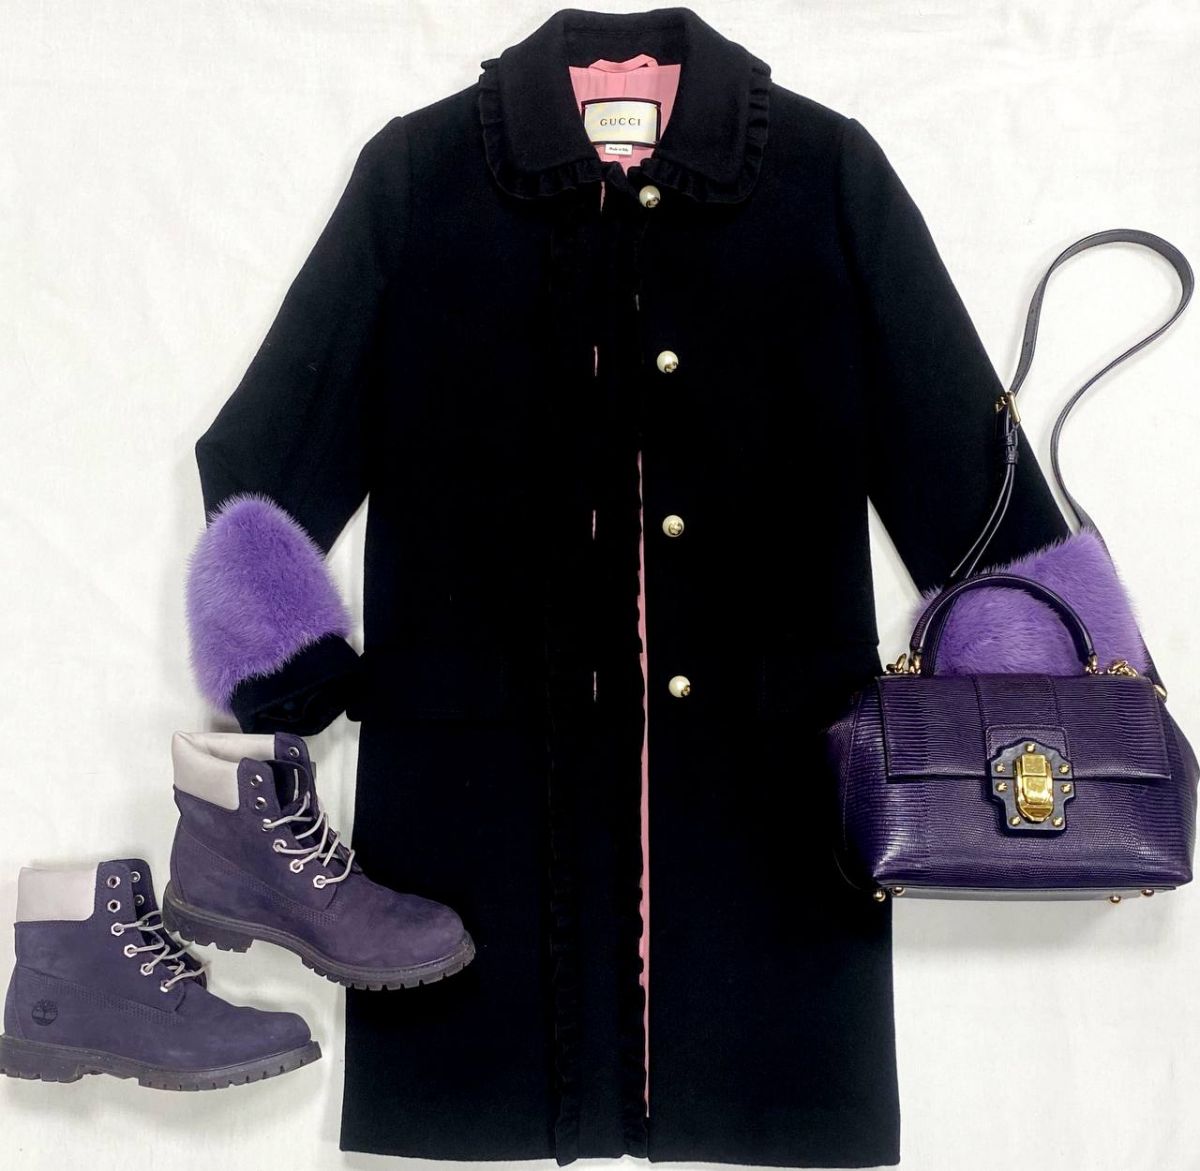 Пальто /отделка мех норки/ Gucci размер 40 цена 76 925 руб
Ботинки Timberland размер 37 цена 9 231 руб
Сумка Dolce Gabbana 